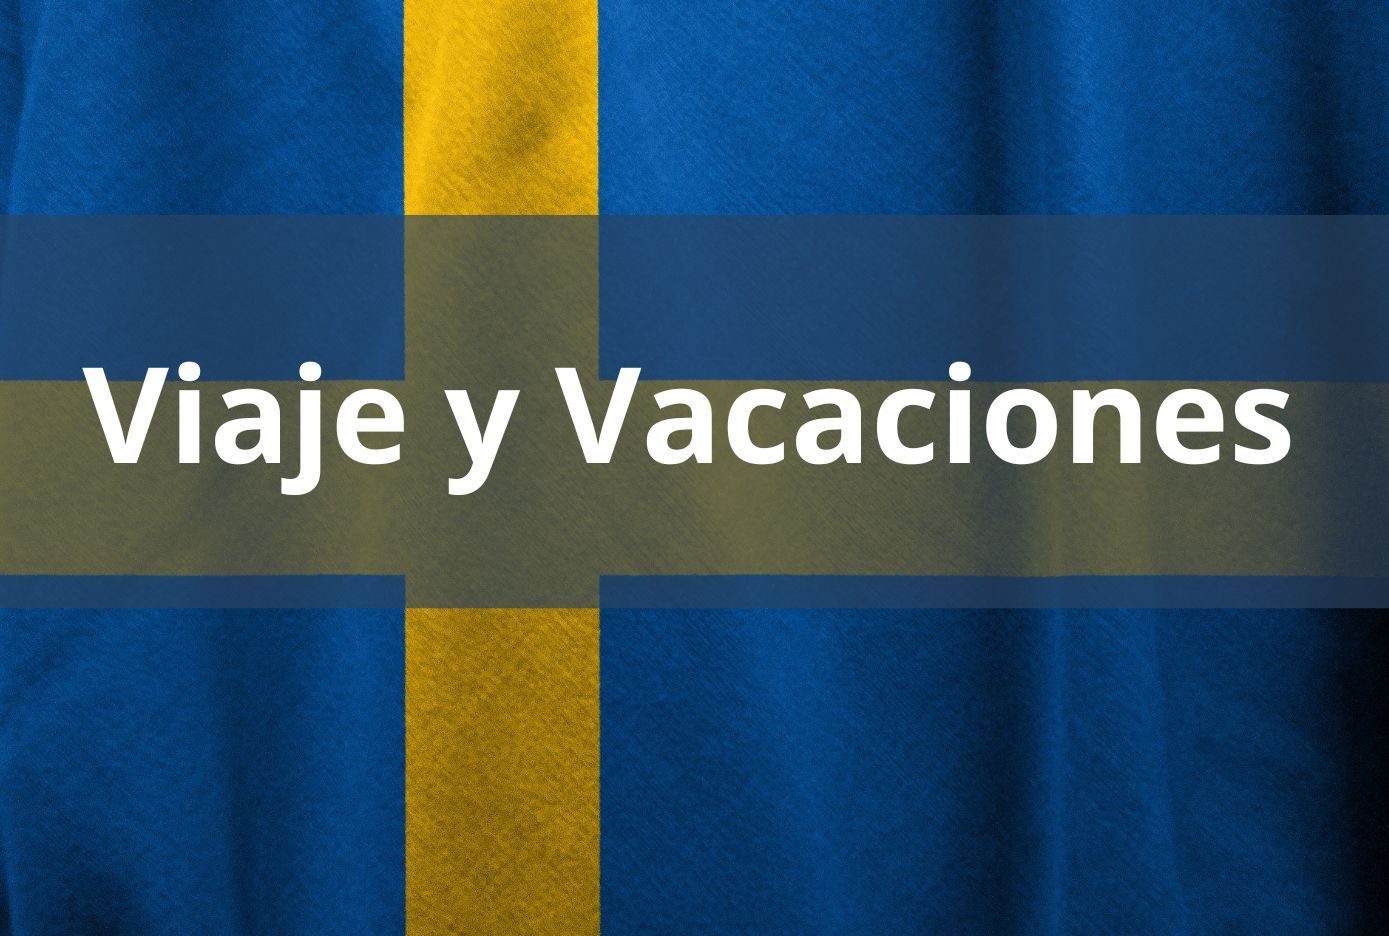 viaje y vacaciones en sueco